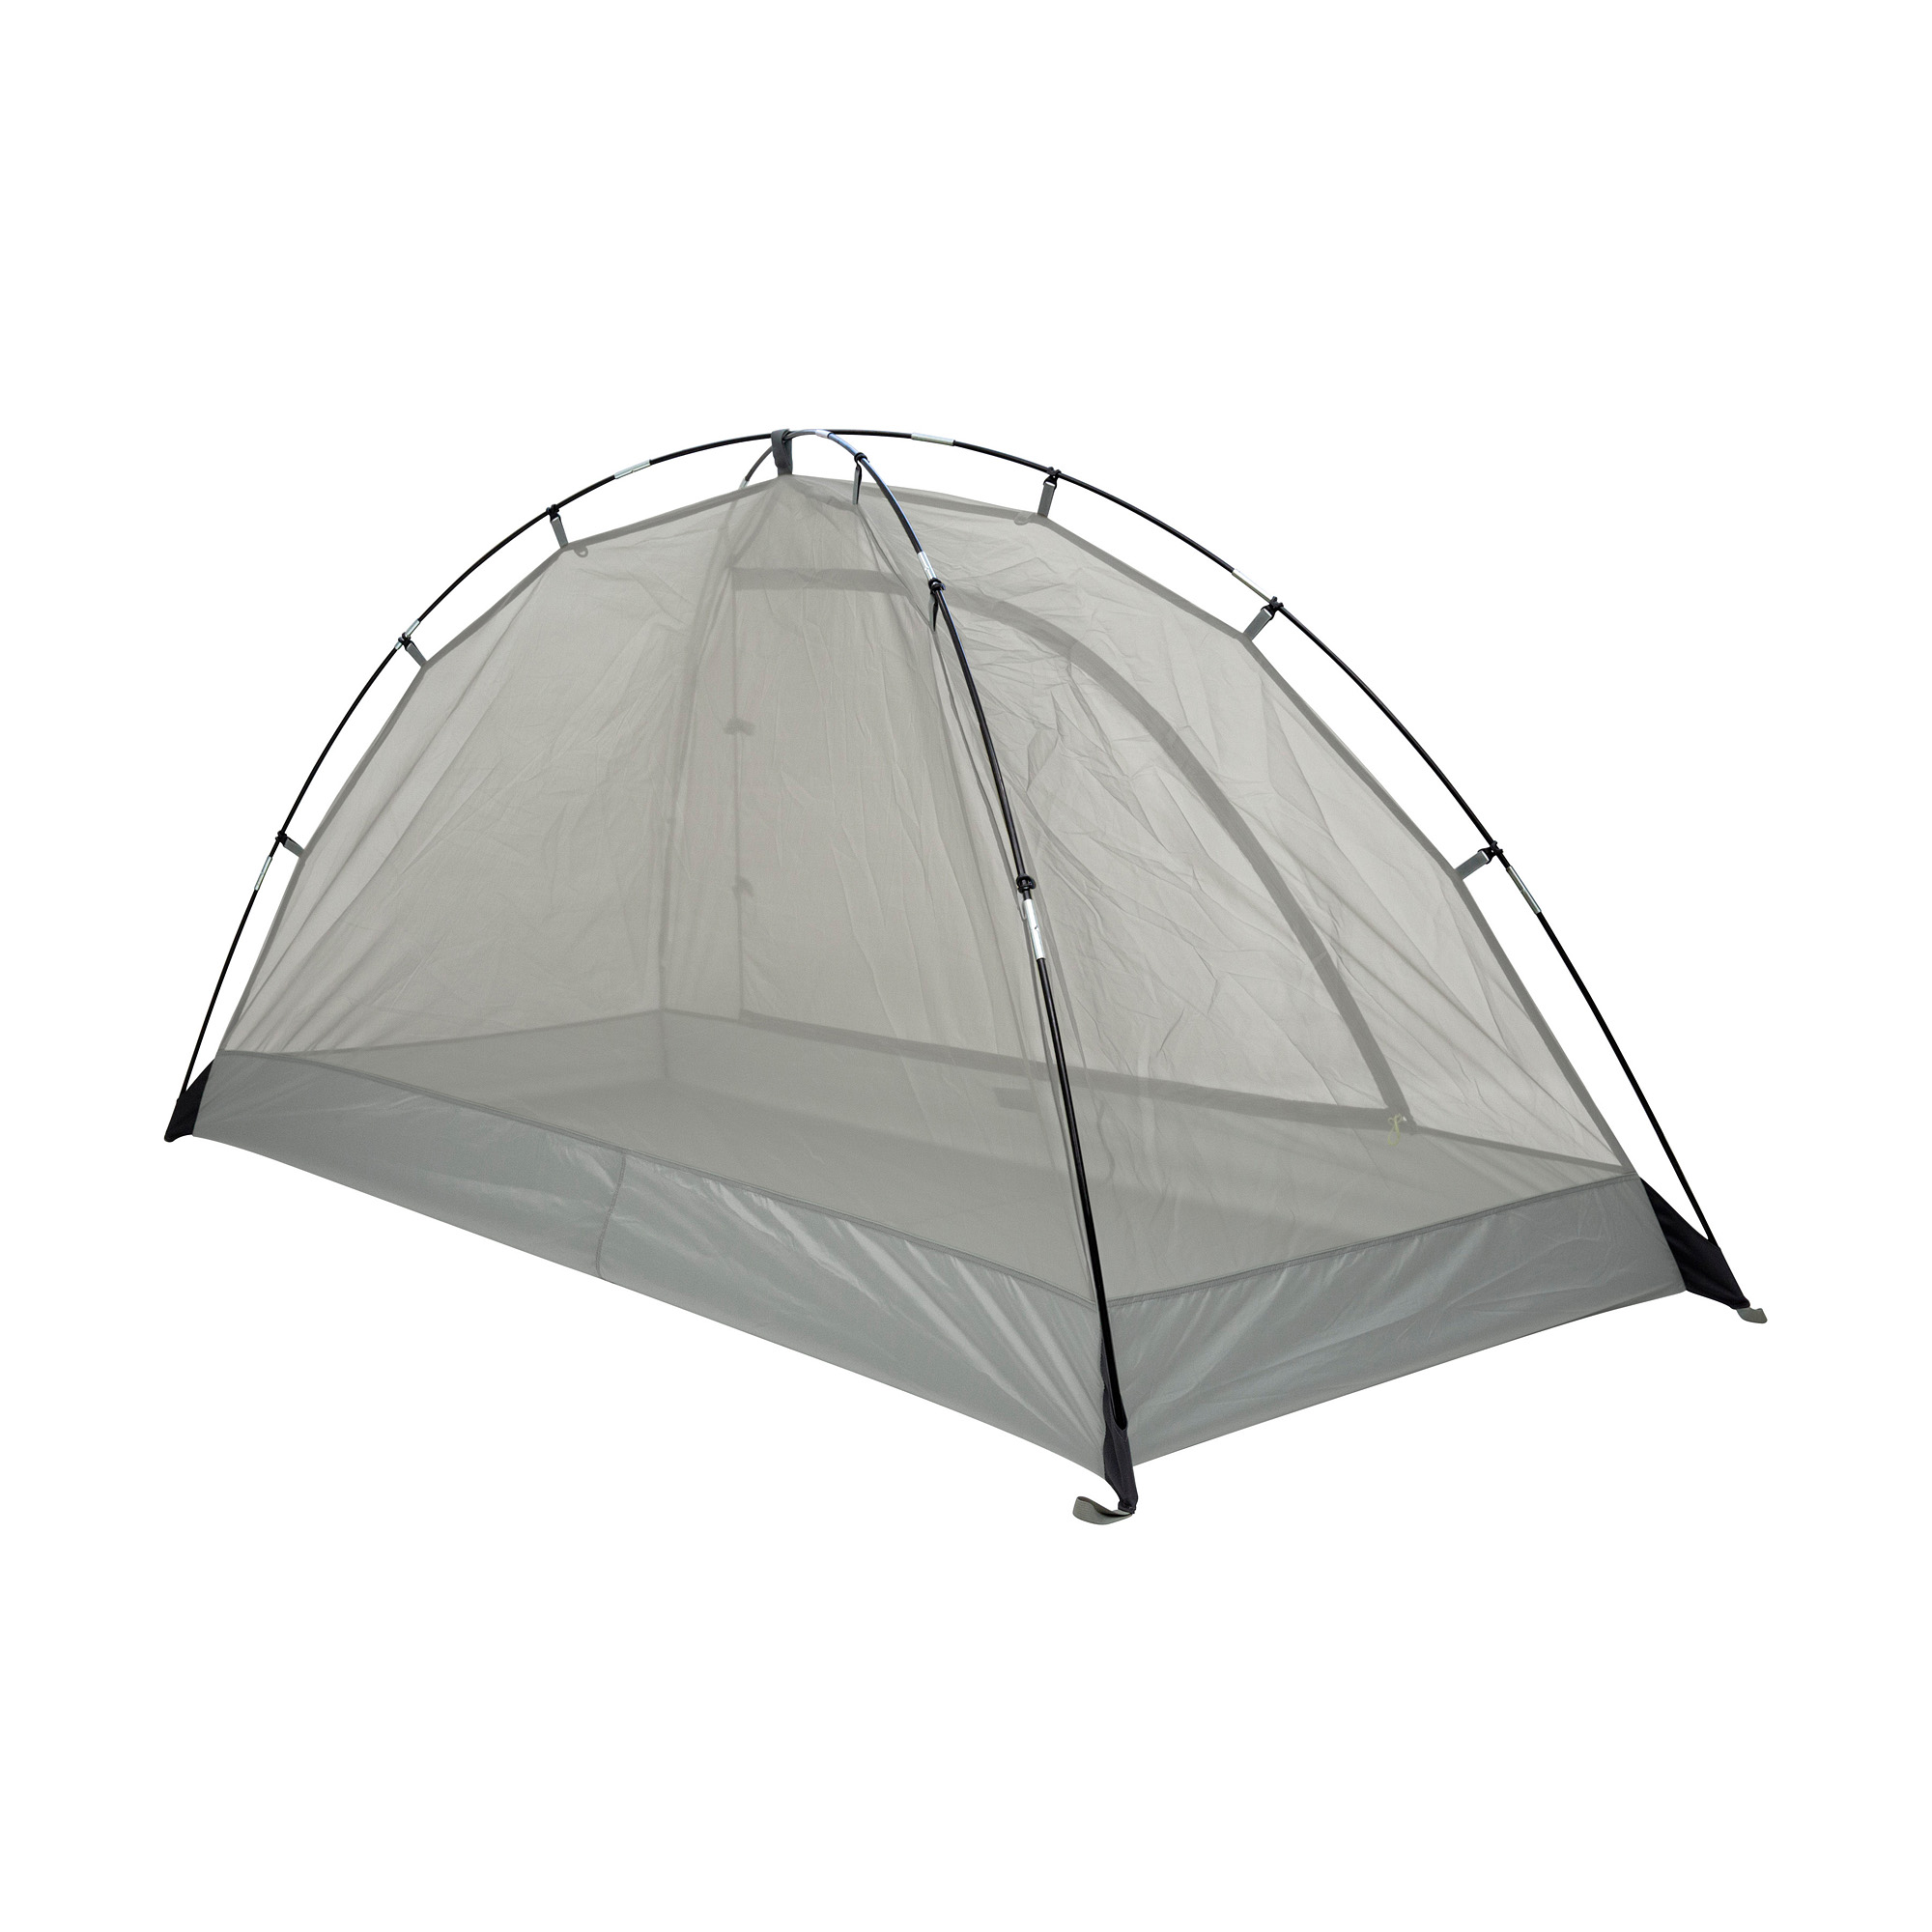 Single Moskito Dome Muggen tent